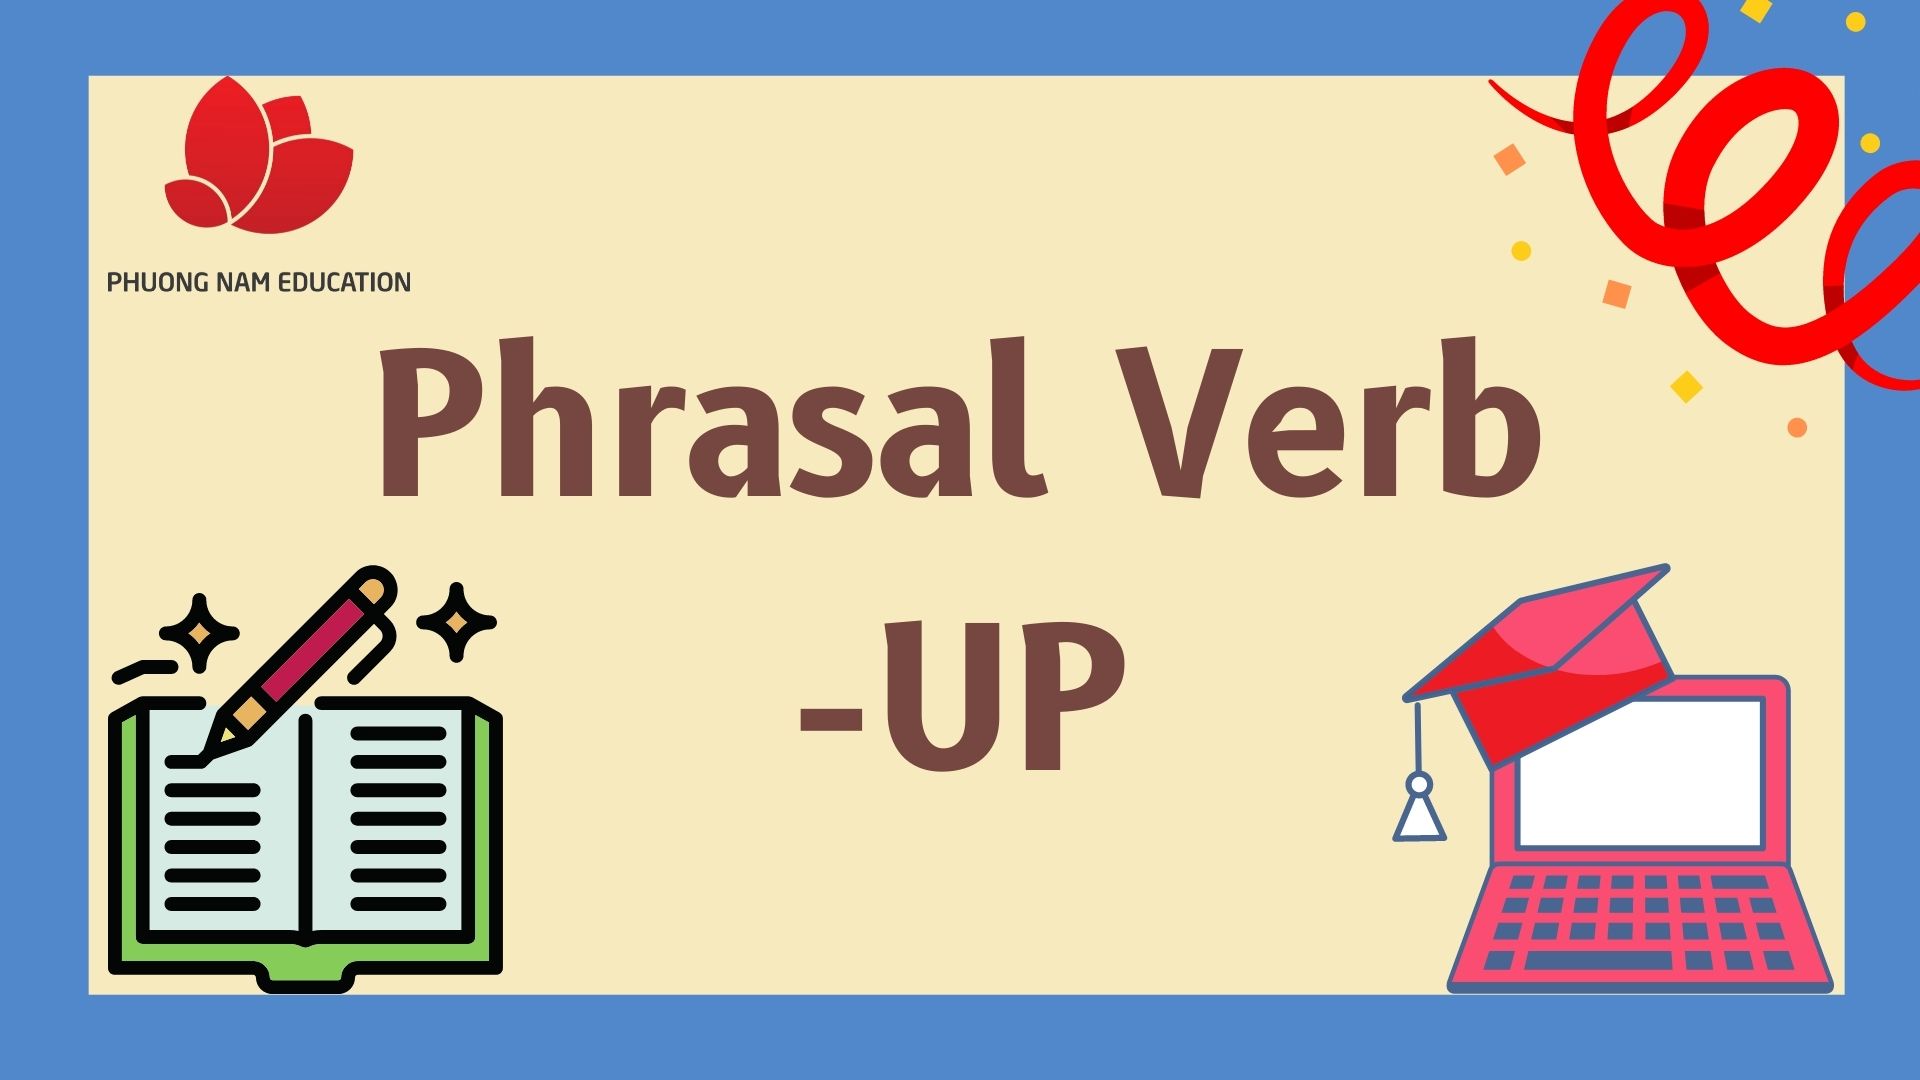 Ta cùng đến với những Phrasal verb đi với UP nhé!